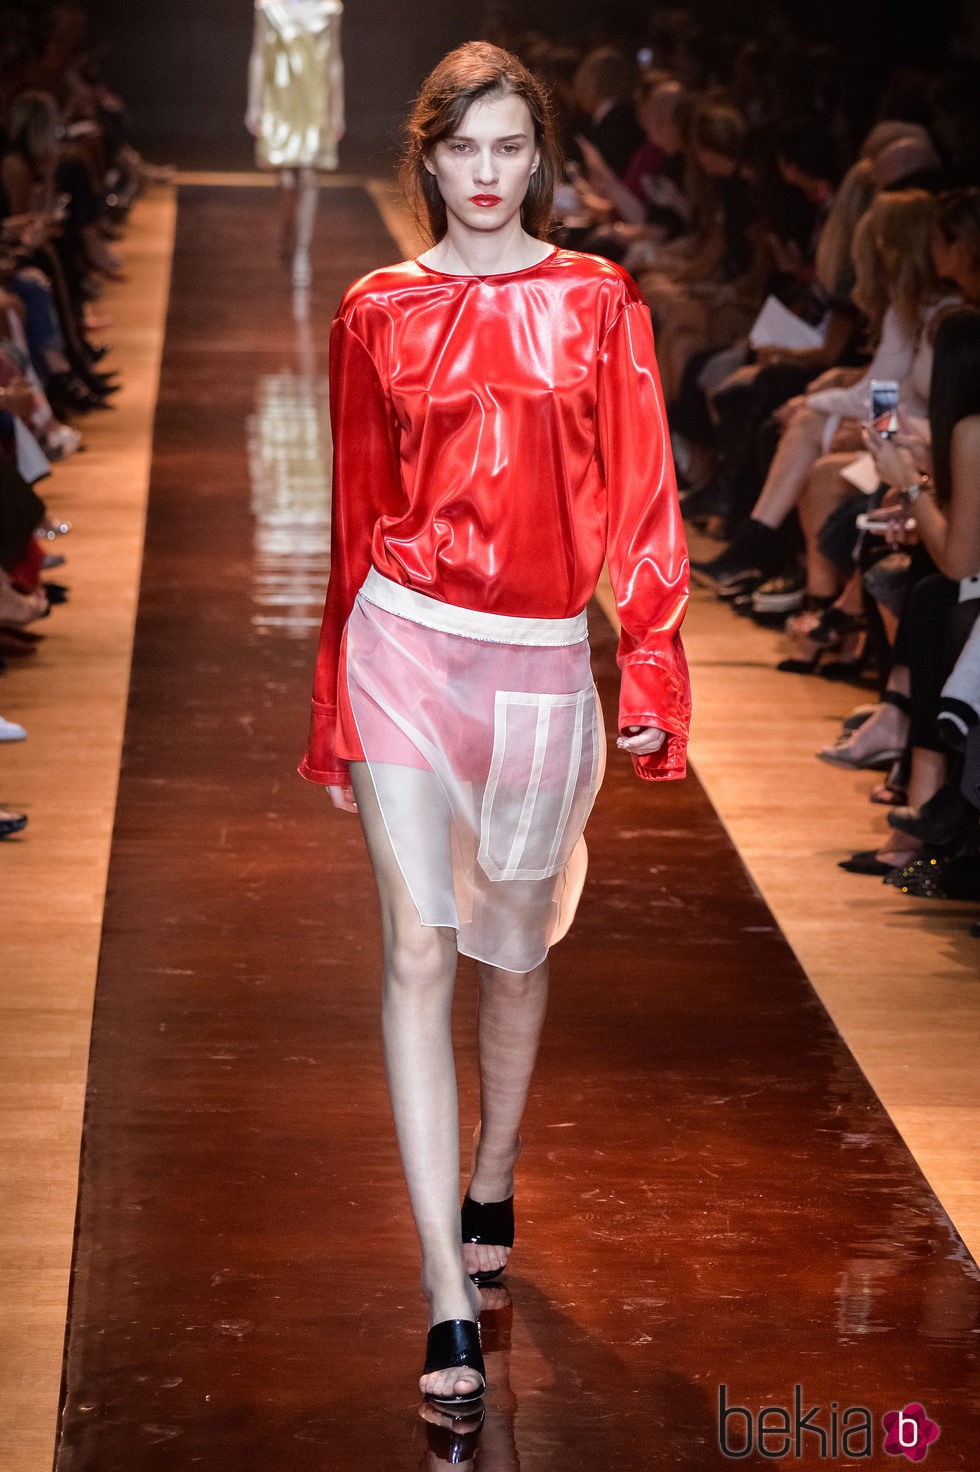 Camisa roja con transparencias y pantalón mostaza de la colección primavera/verano 2016 de Nina Ricci en Paris Fashion Week